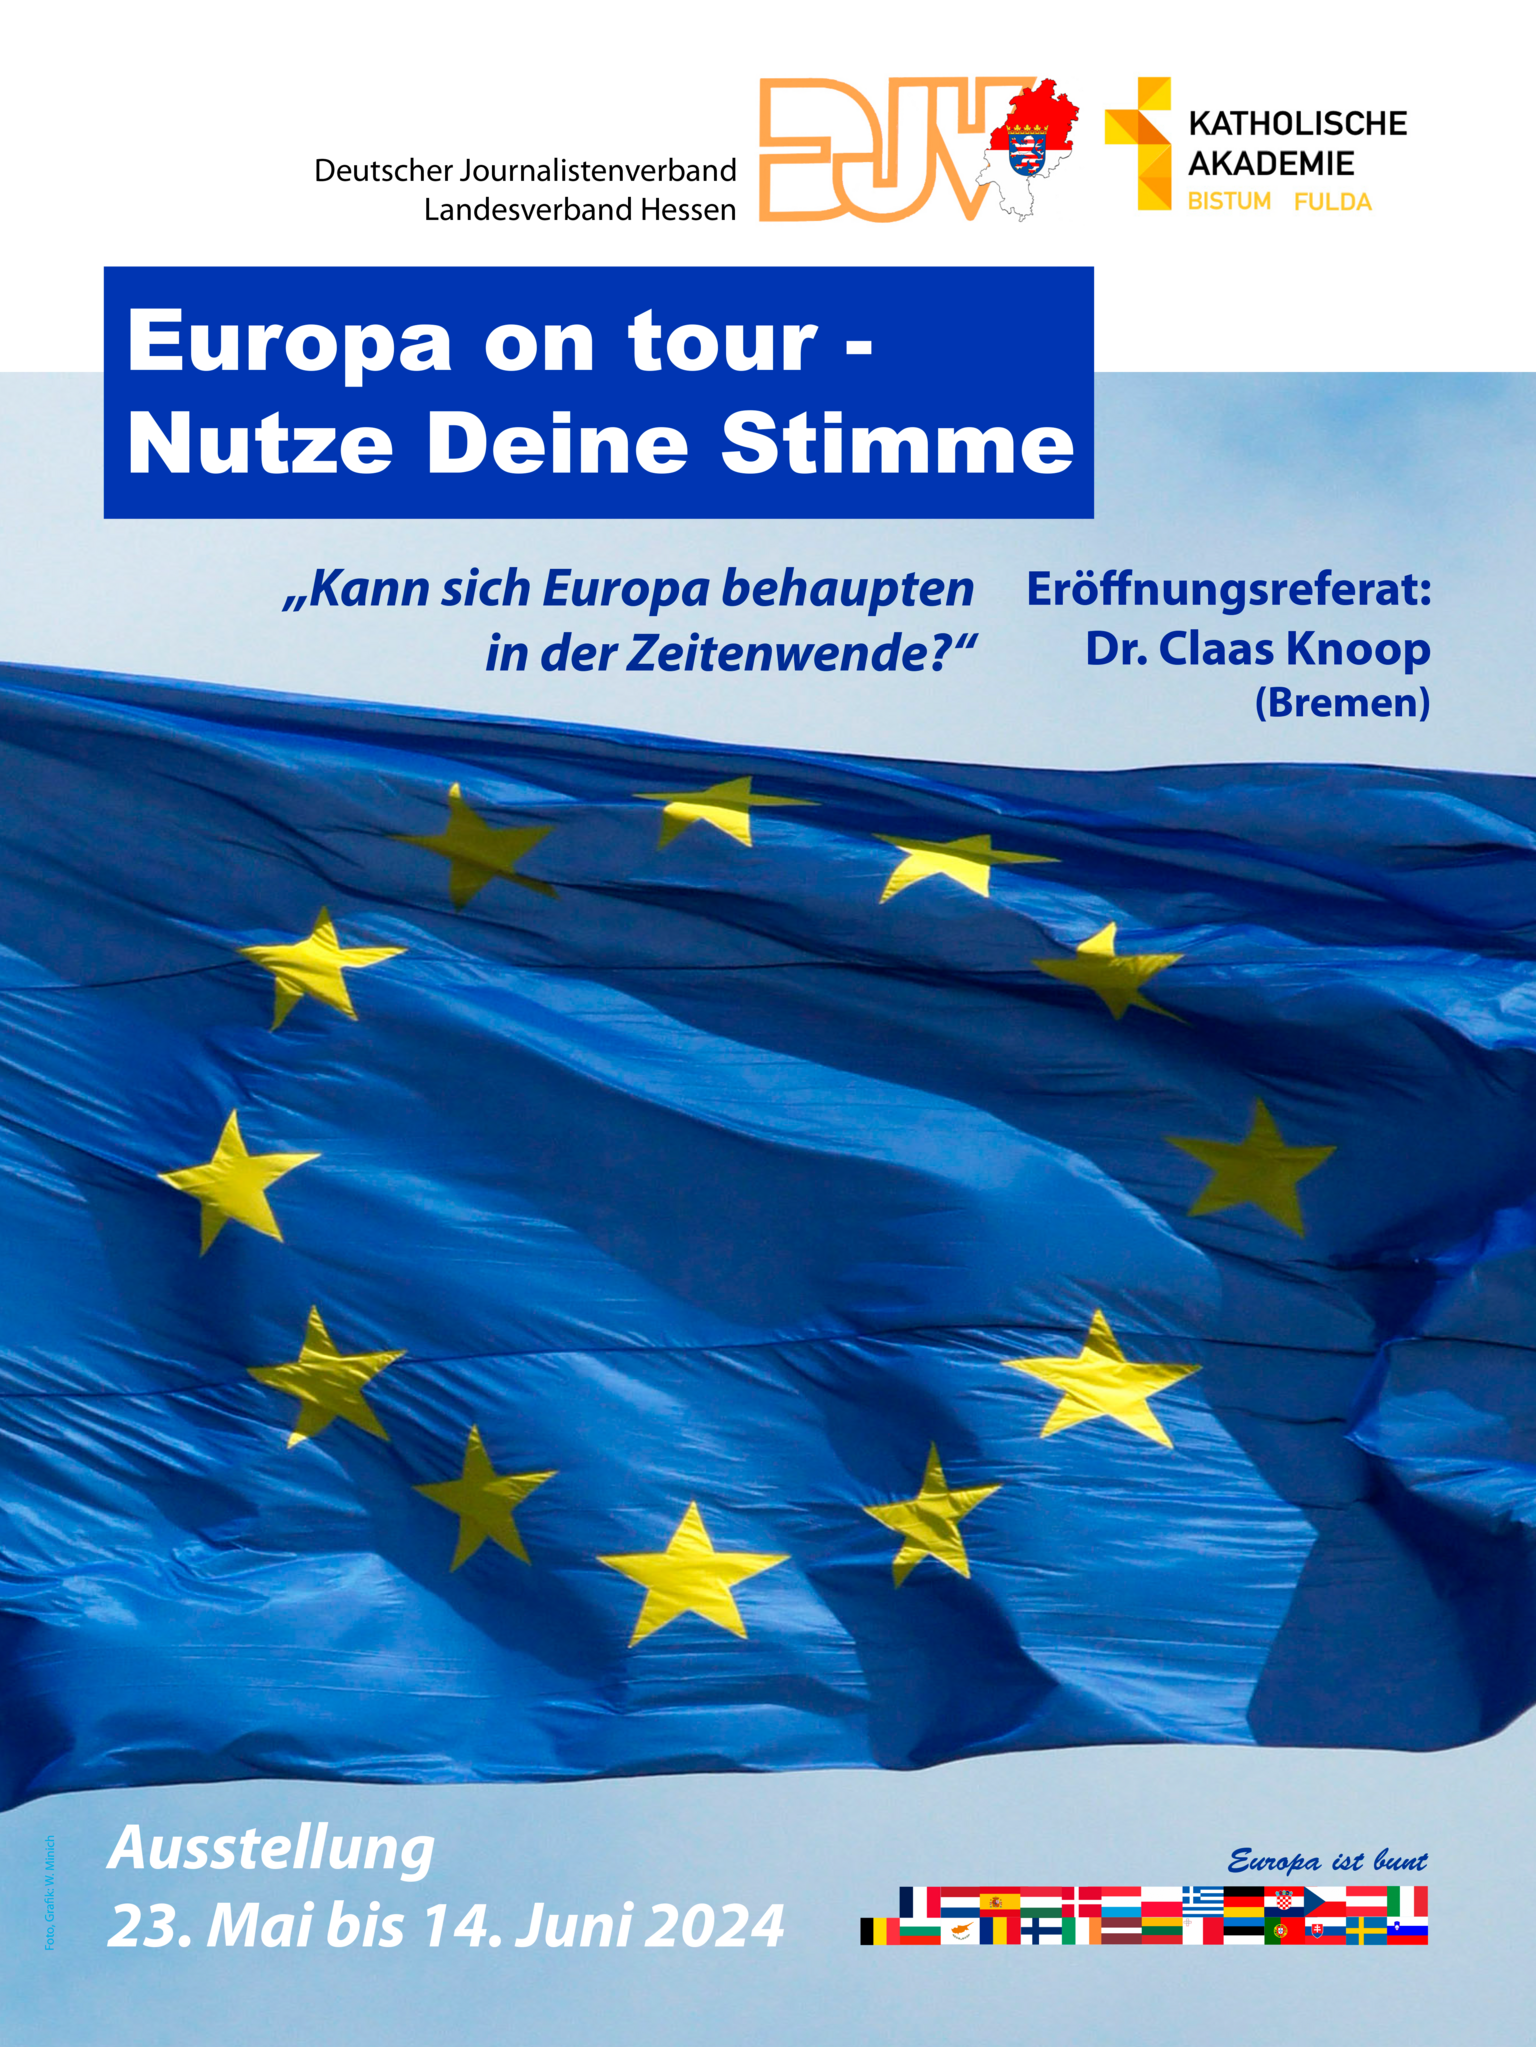 DJV Hessen: „Europa on tour - Nutze Deine Stime” - Ankündigung Ausstellung vom 23. Mai bis 14. Juni 2024 – DJV Hessen: „Europa on tour - Nutze Deine Stime” - Ankündigung Ausstellung vom 23. Mai bis 14. Juni 2024